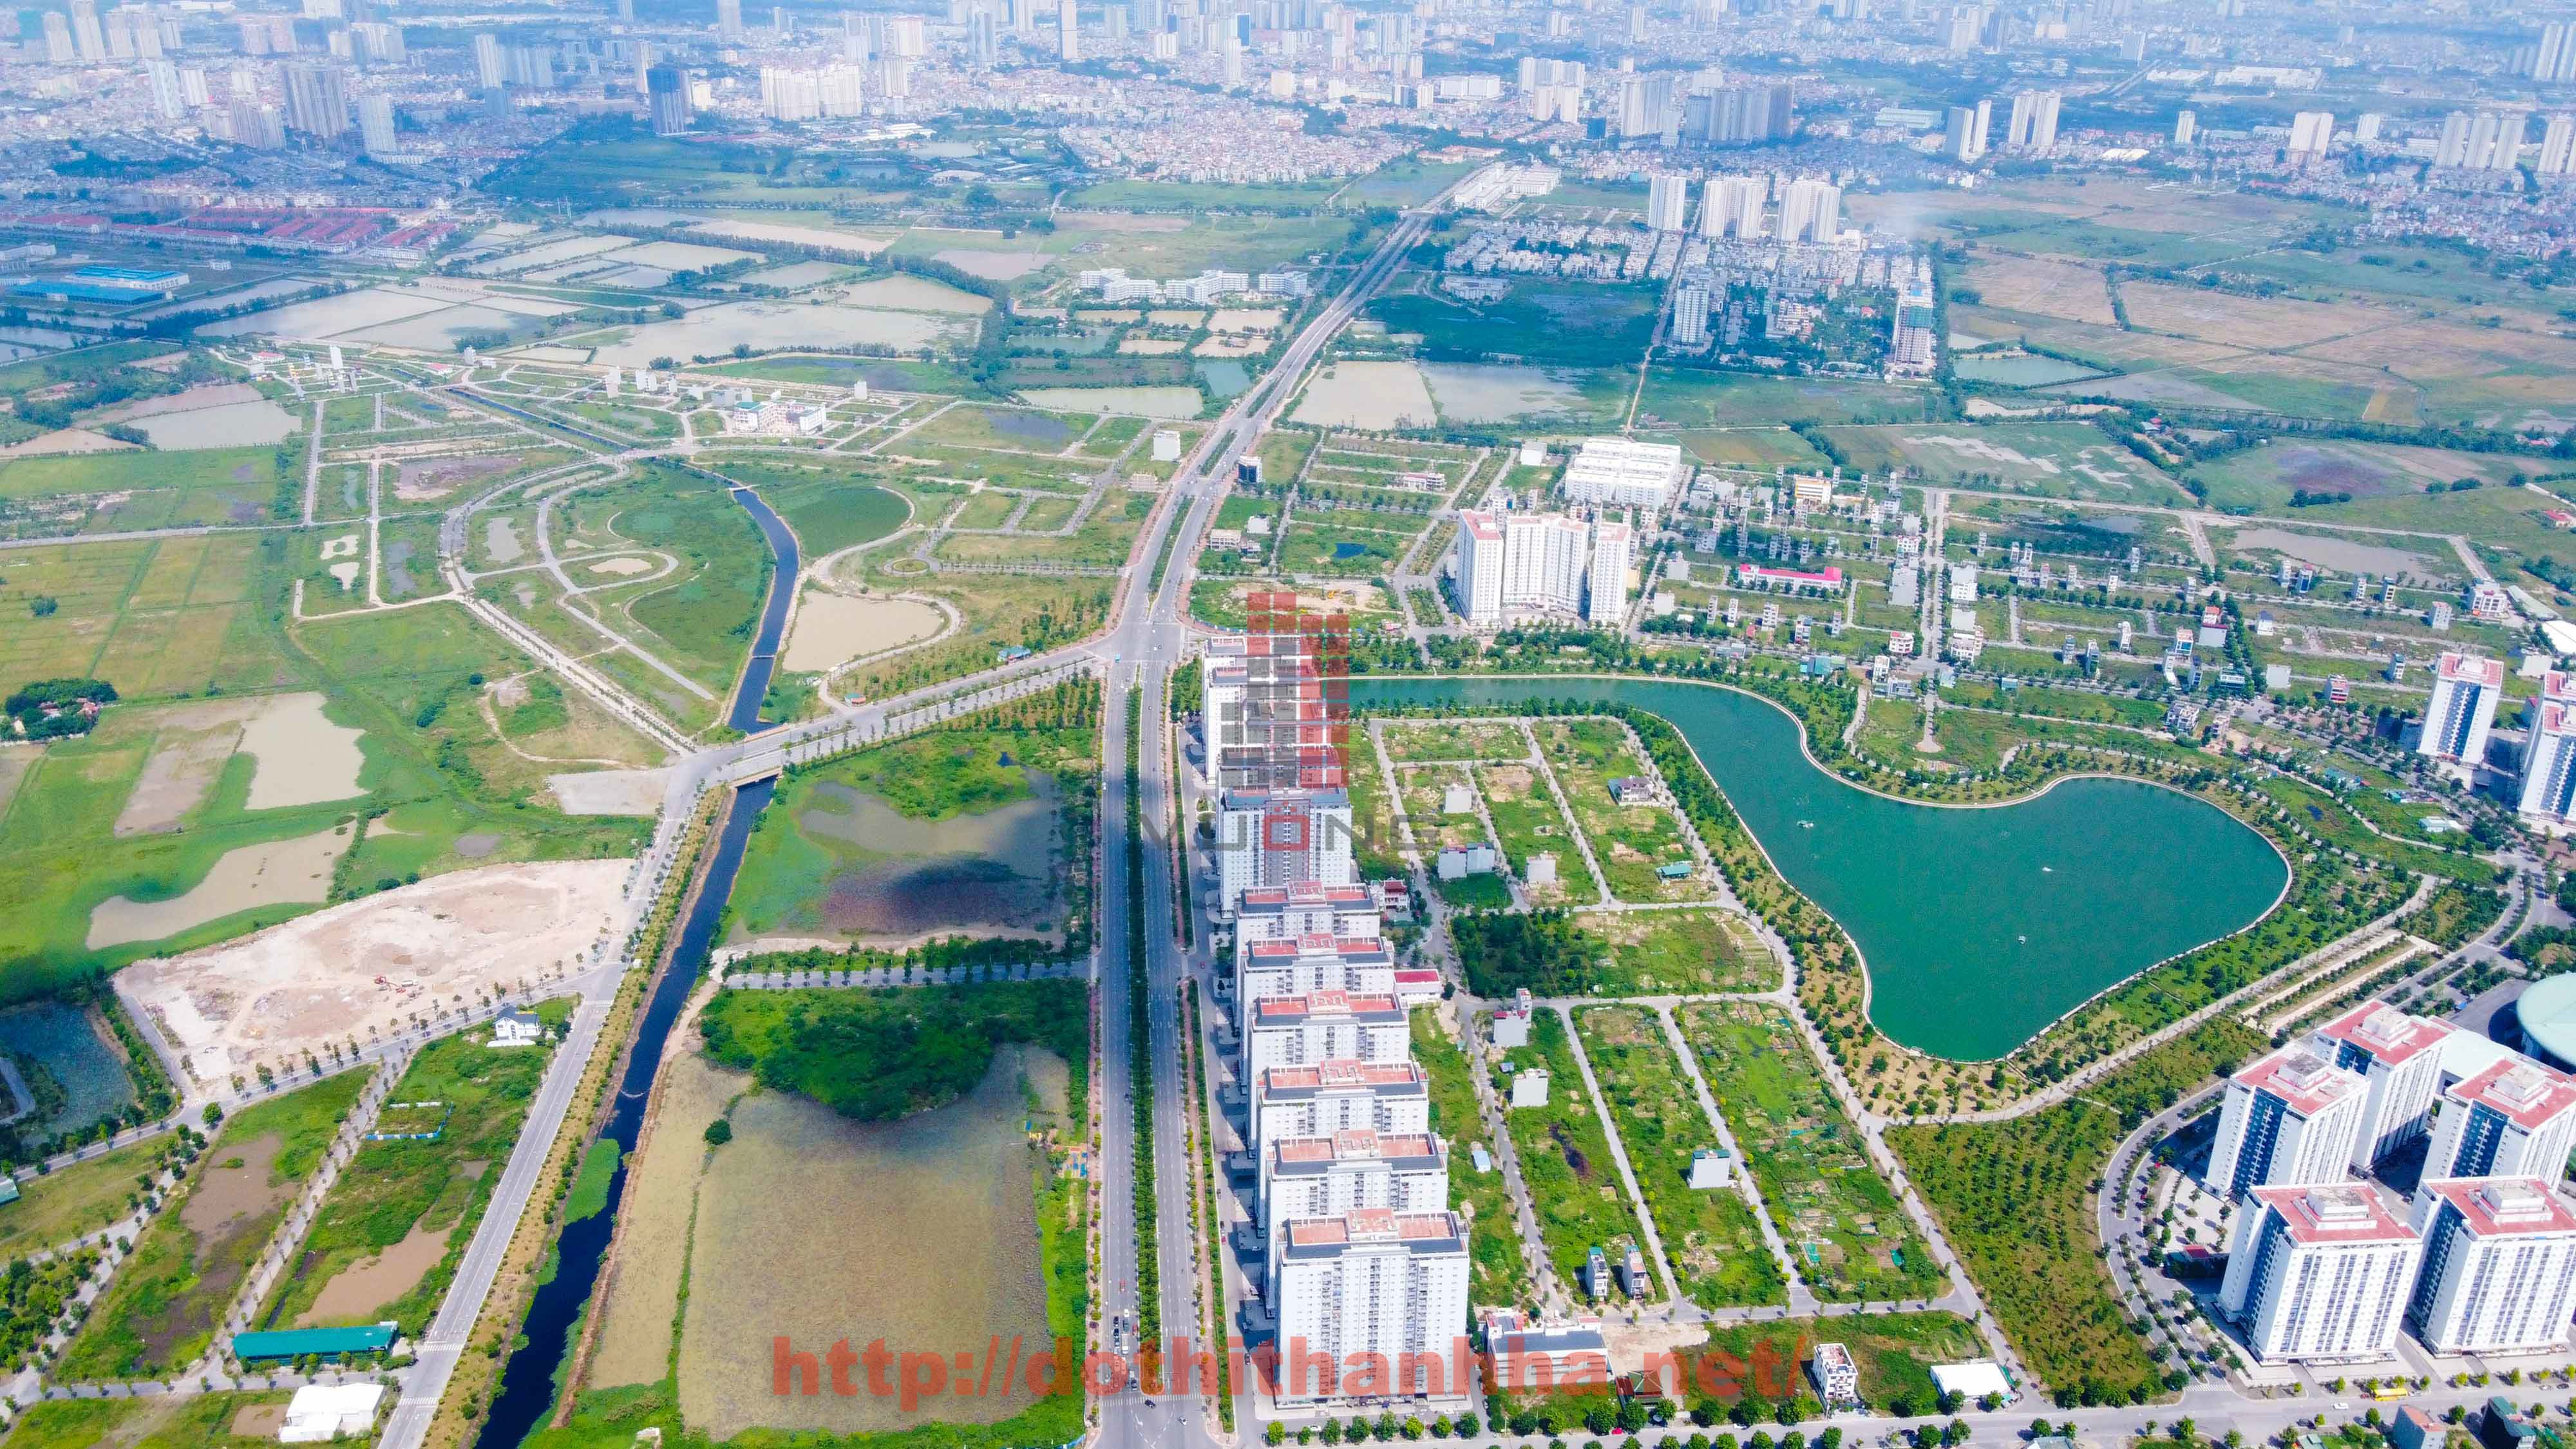 Bán liền kề B1.1 khu đô thị Thanh Hà, hướng Tây Nam diện tích 90m2, mặt sau đường 30m, gần hồ điều hoà khu B